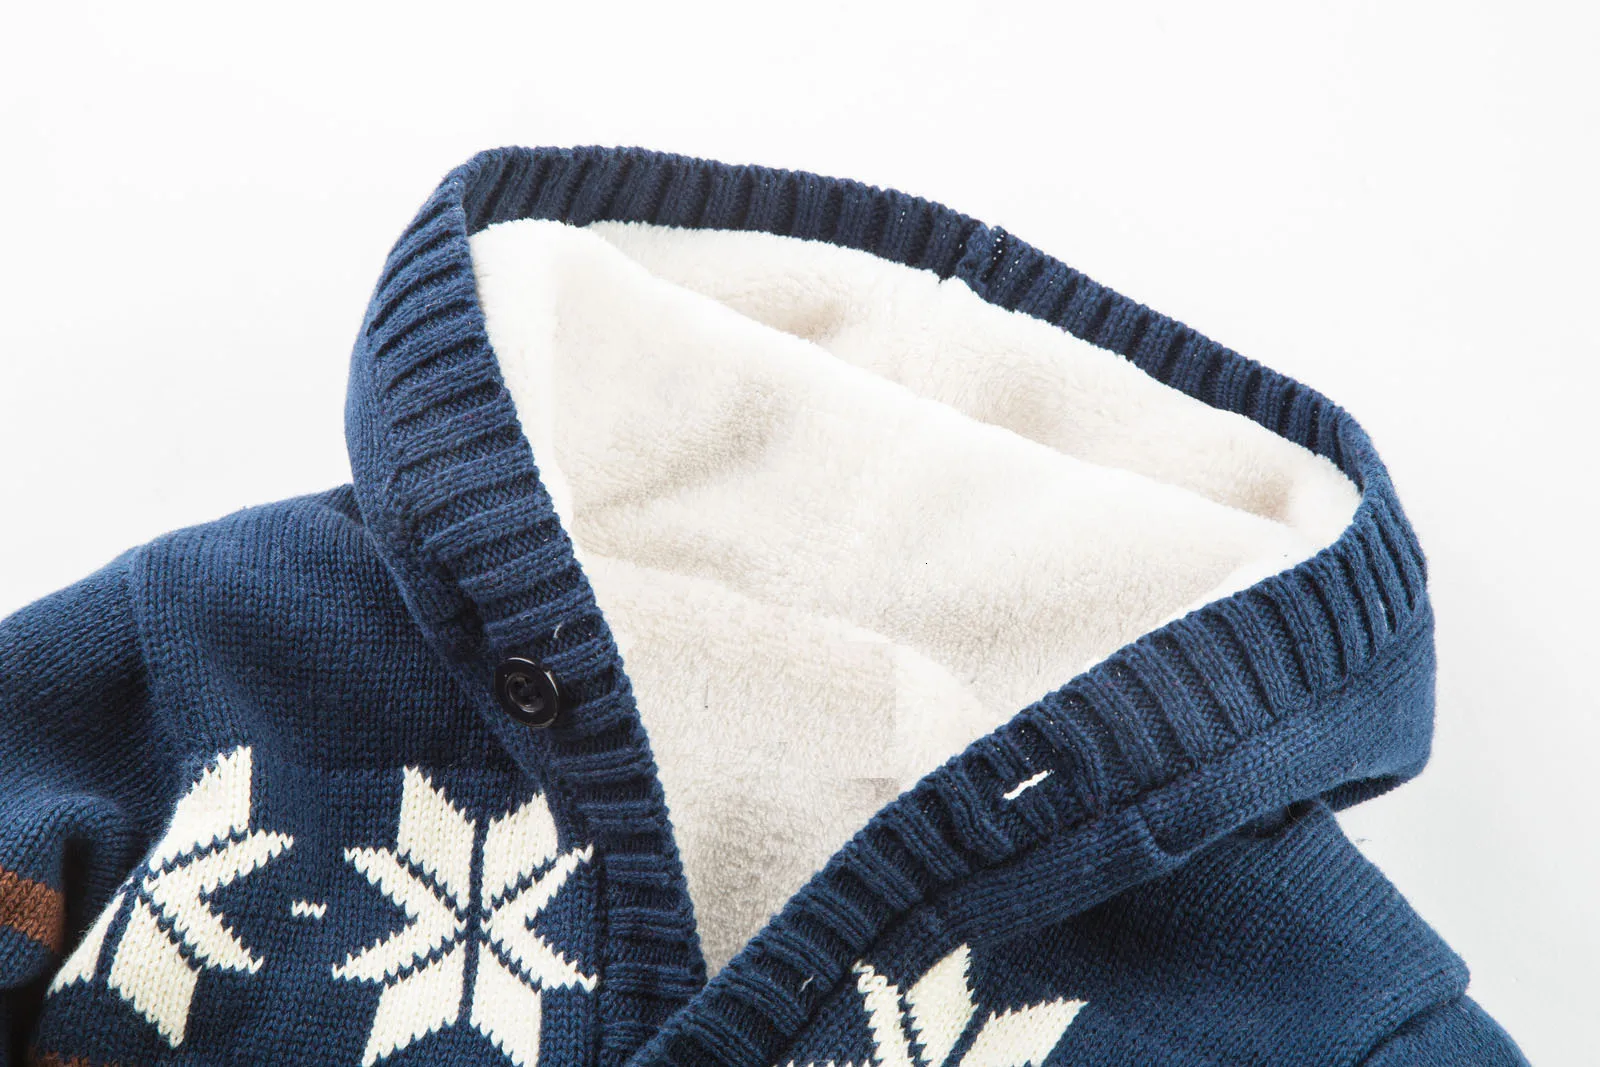 Теплые детские комбинезоны; зимняя плотная одежда для альпинизма; комбинезон для новорожденных мальчиков и девочек; вязаный свитер с рождественским оленем; Верхняя одежда для детей с капюшоном